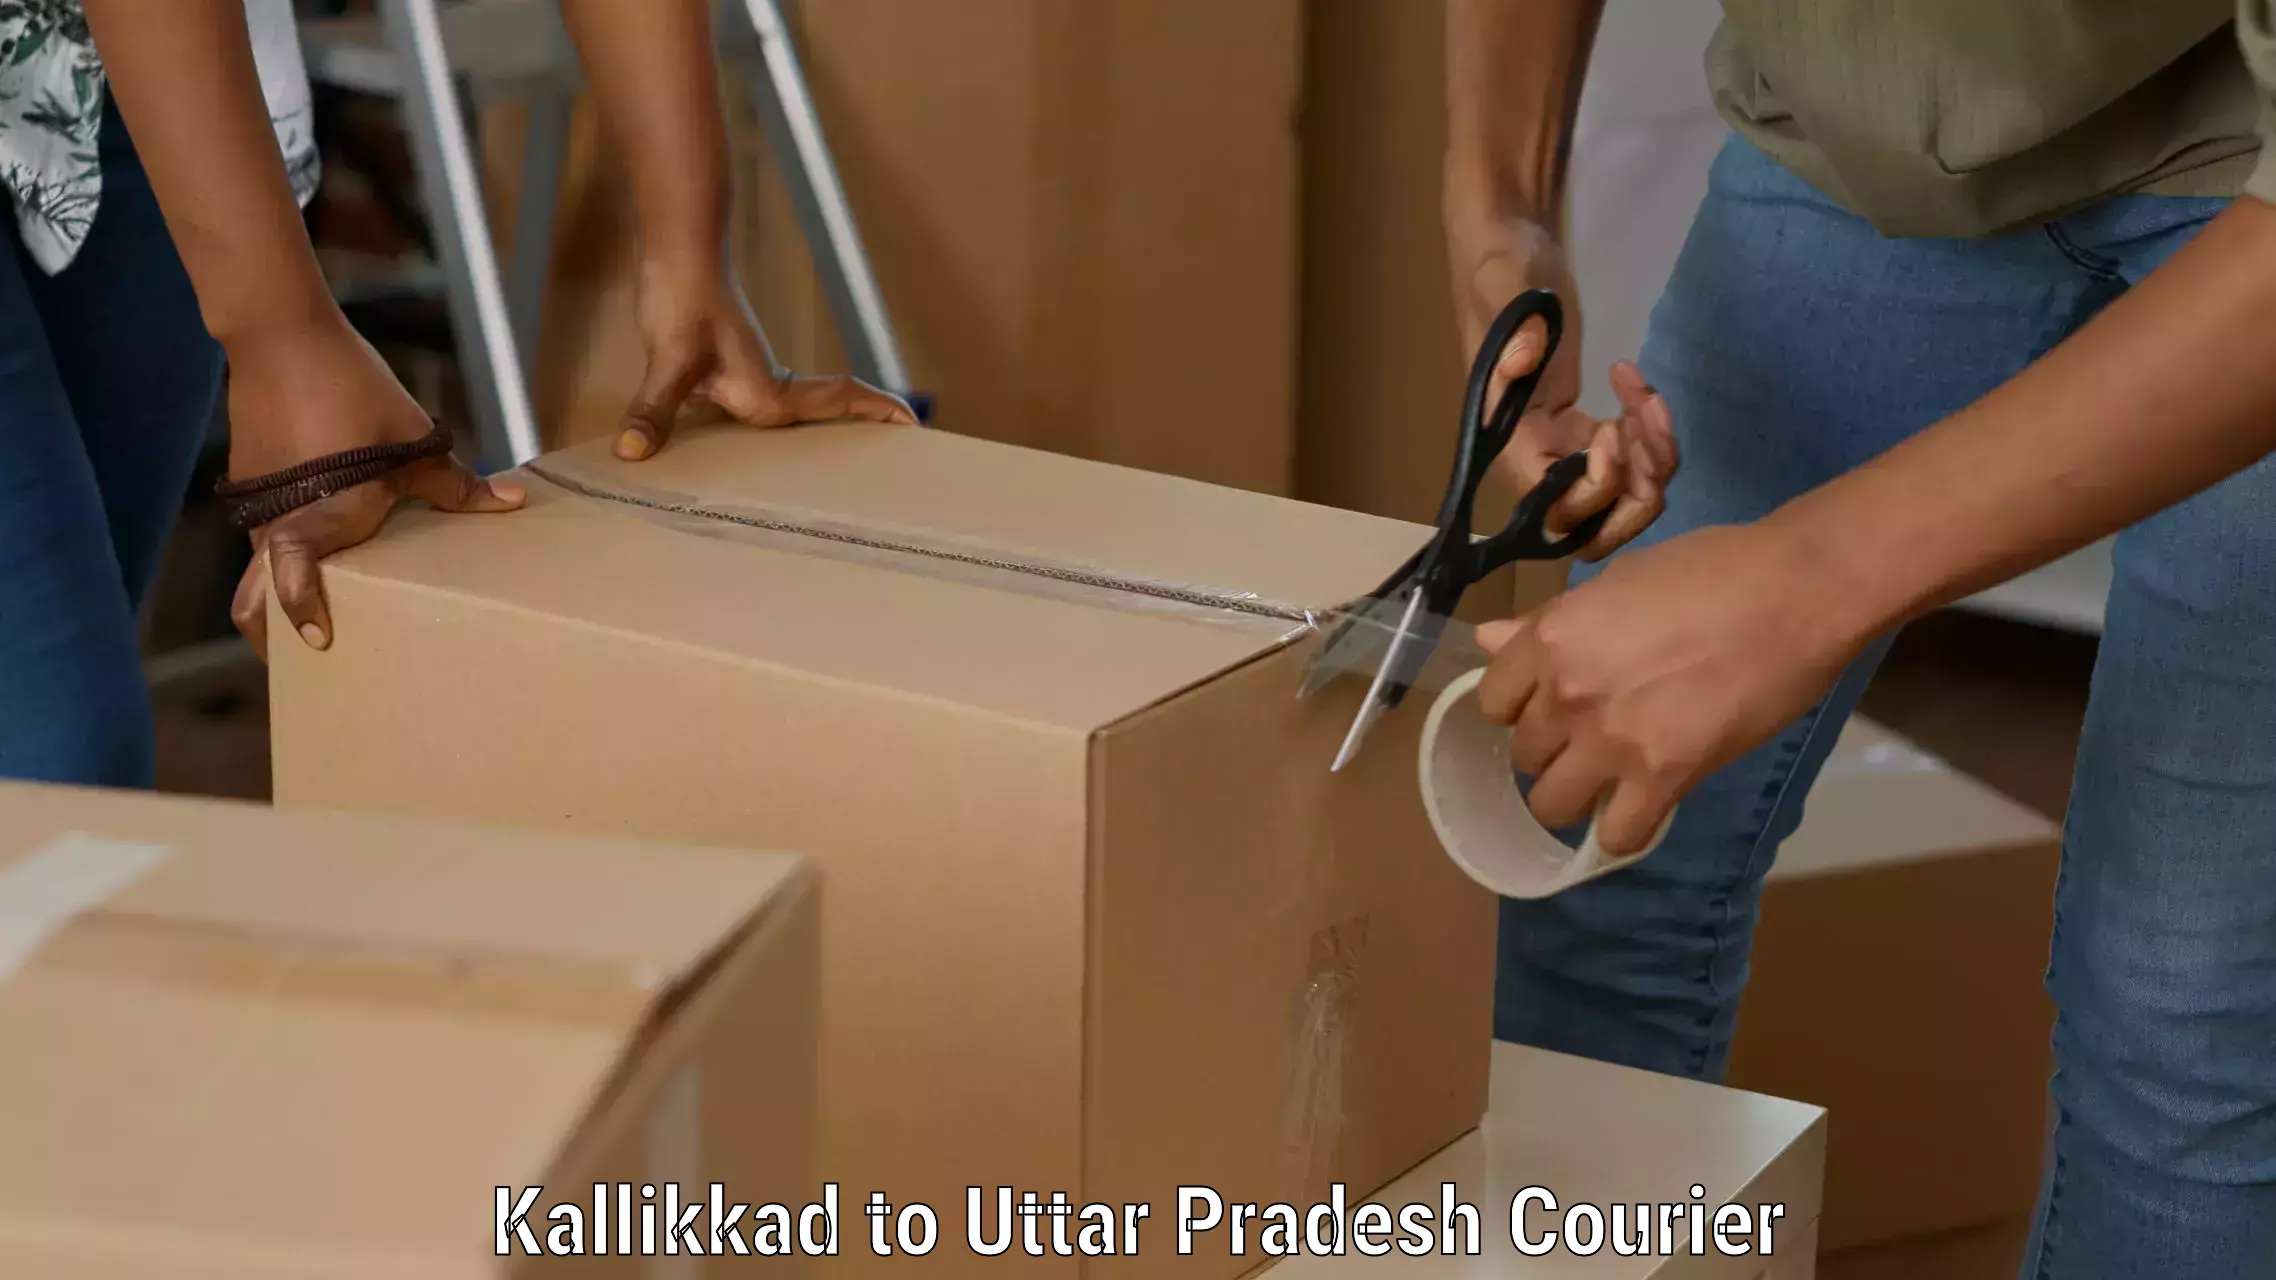 High-capacity parcel service Kallikkad to Ganj Dundwara